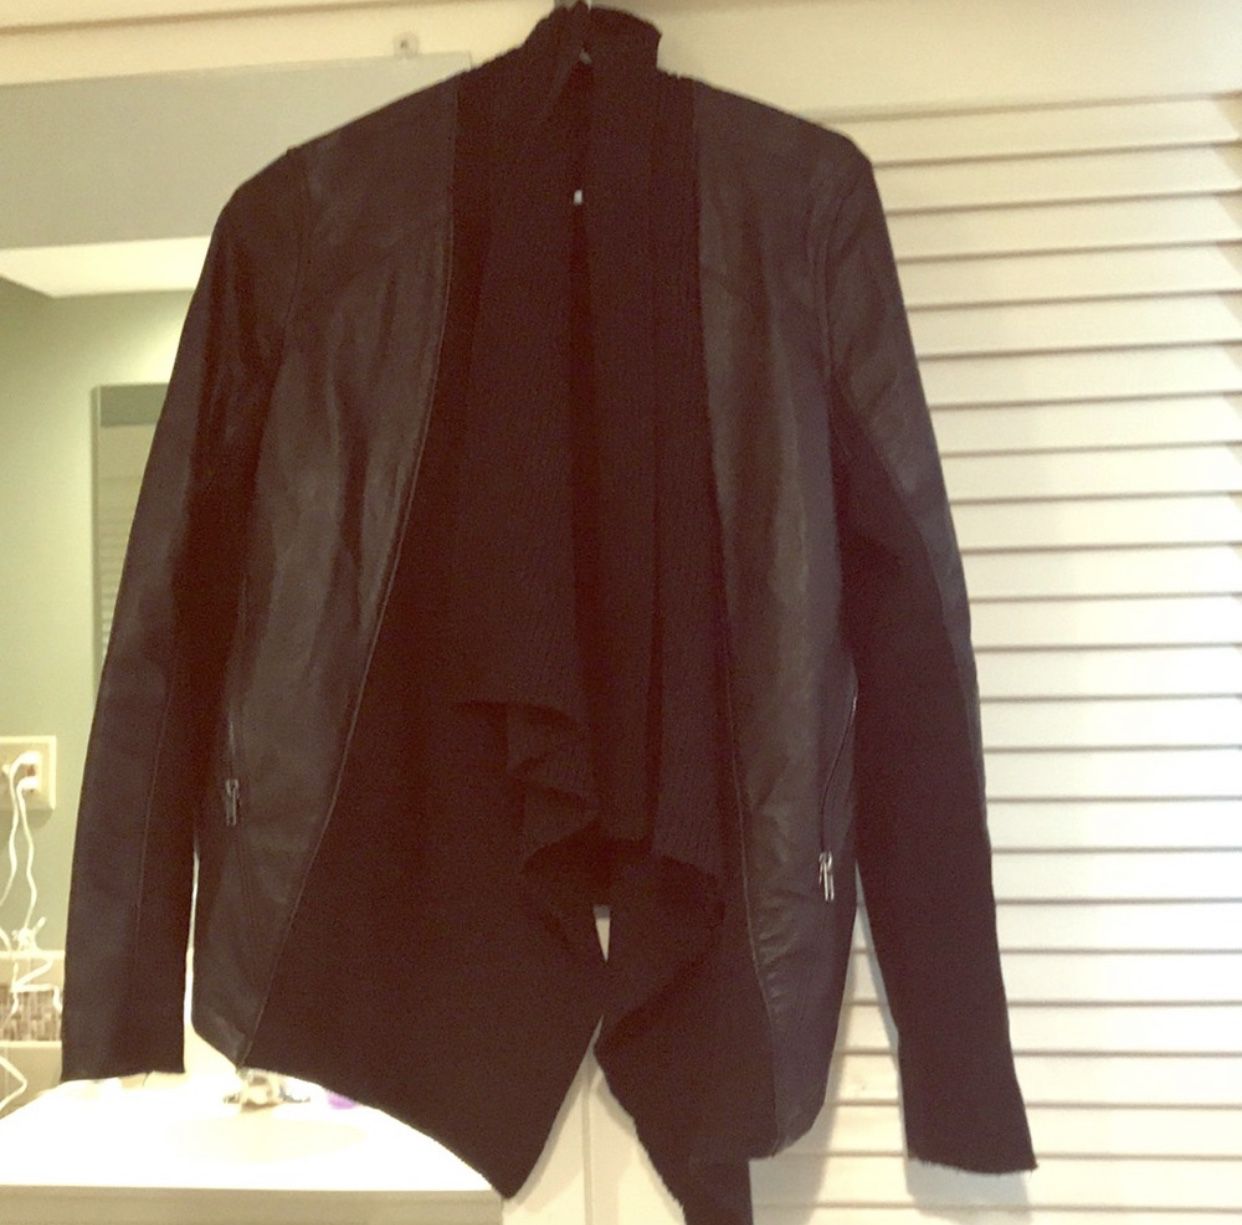 BLANKNYC Faux Leather Jacket